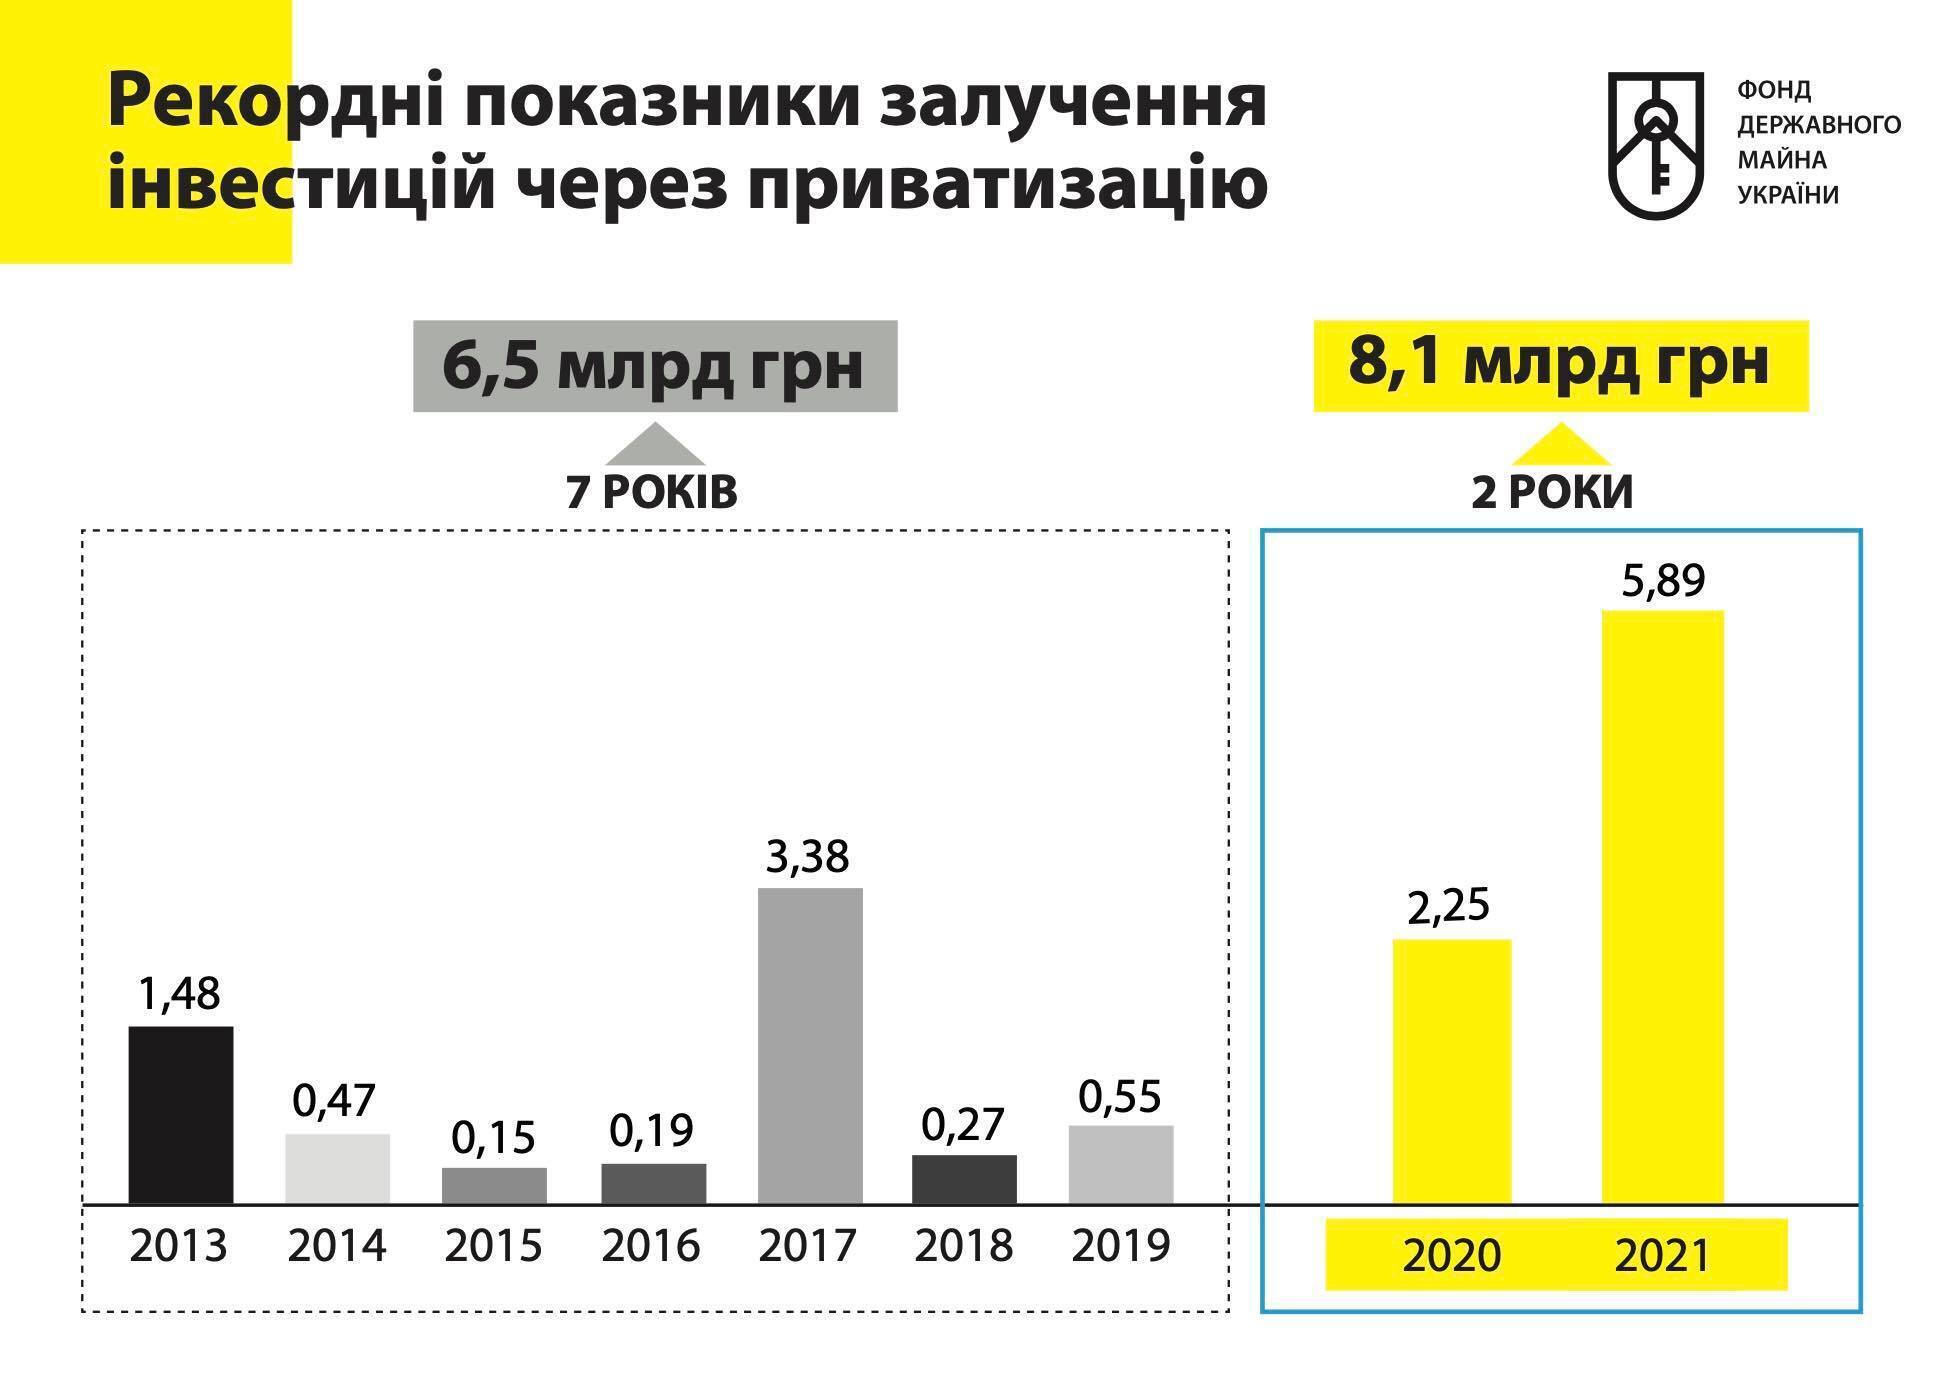 Майже 1,5 млрд грн надійшли до бюджету з приватизації "Більшовика"